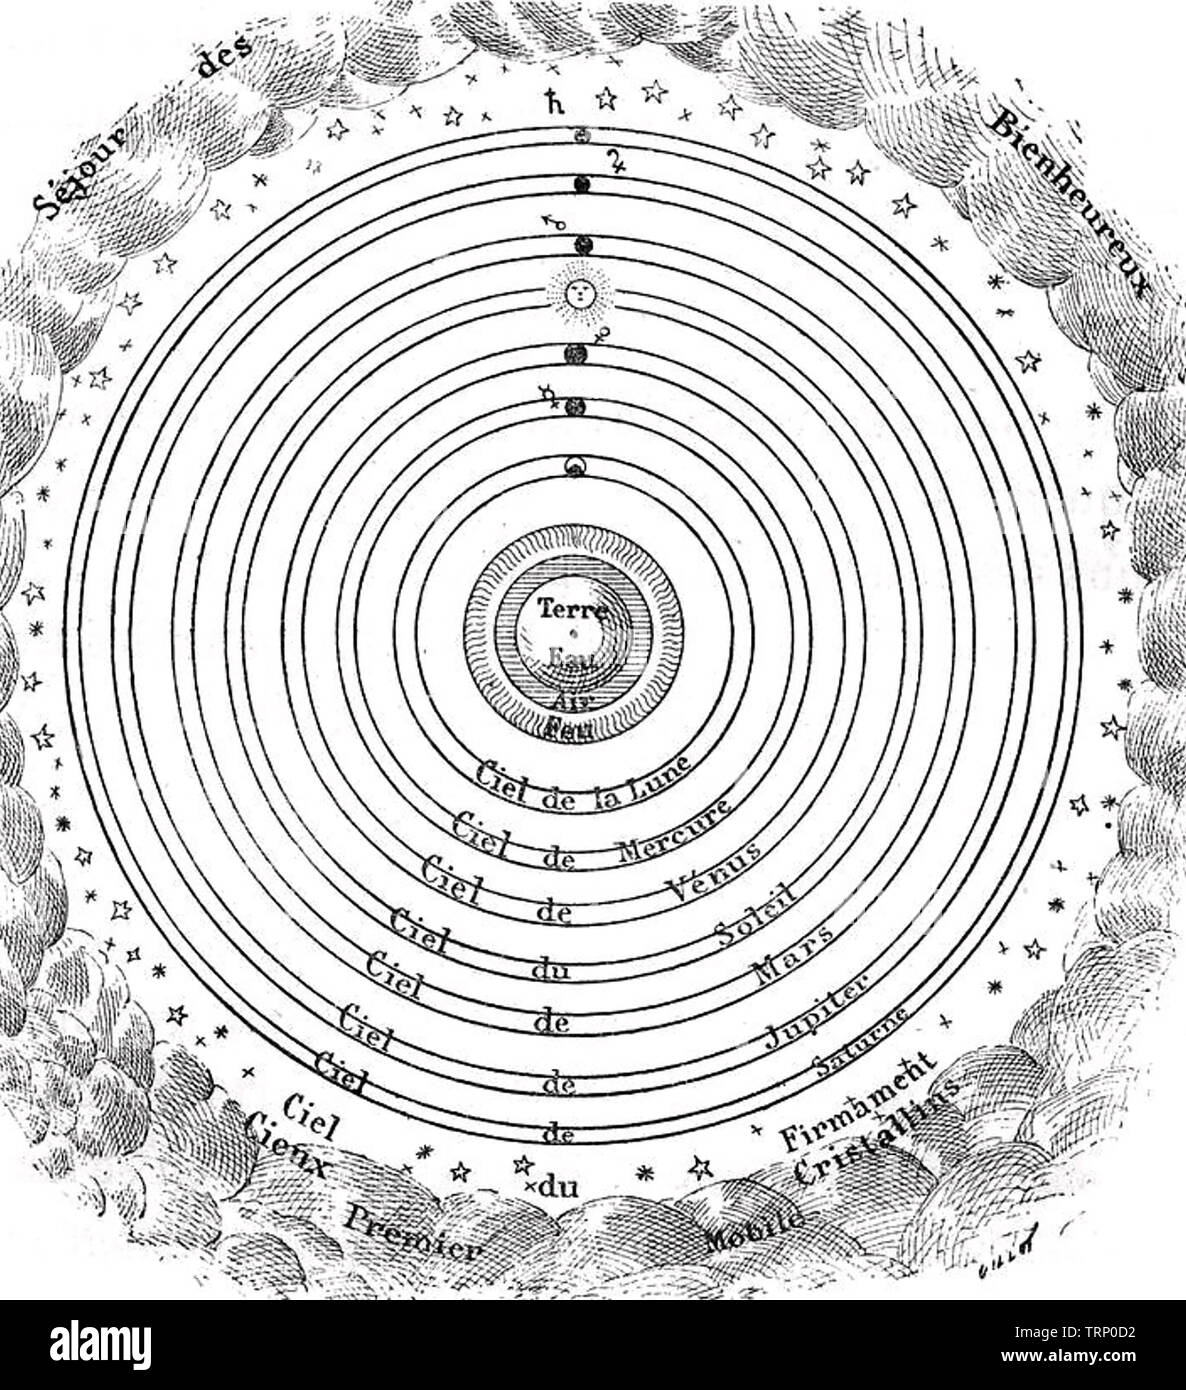 Ptolemäus (c 100 - C 170 AD) griechisch-römischen Mathematiker und Astronom. Französisches Bild von seinem Geozentrischen Idee des Sonnensystems Stockfoto